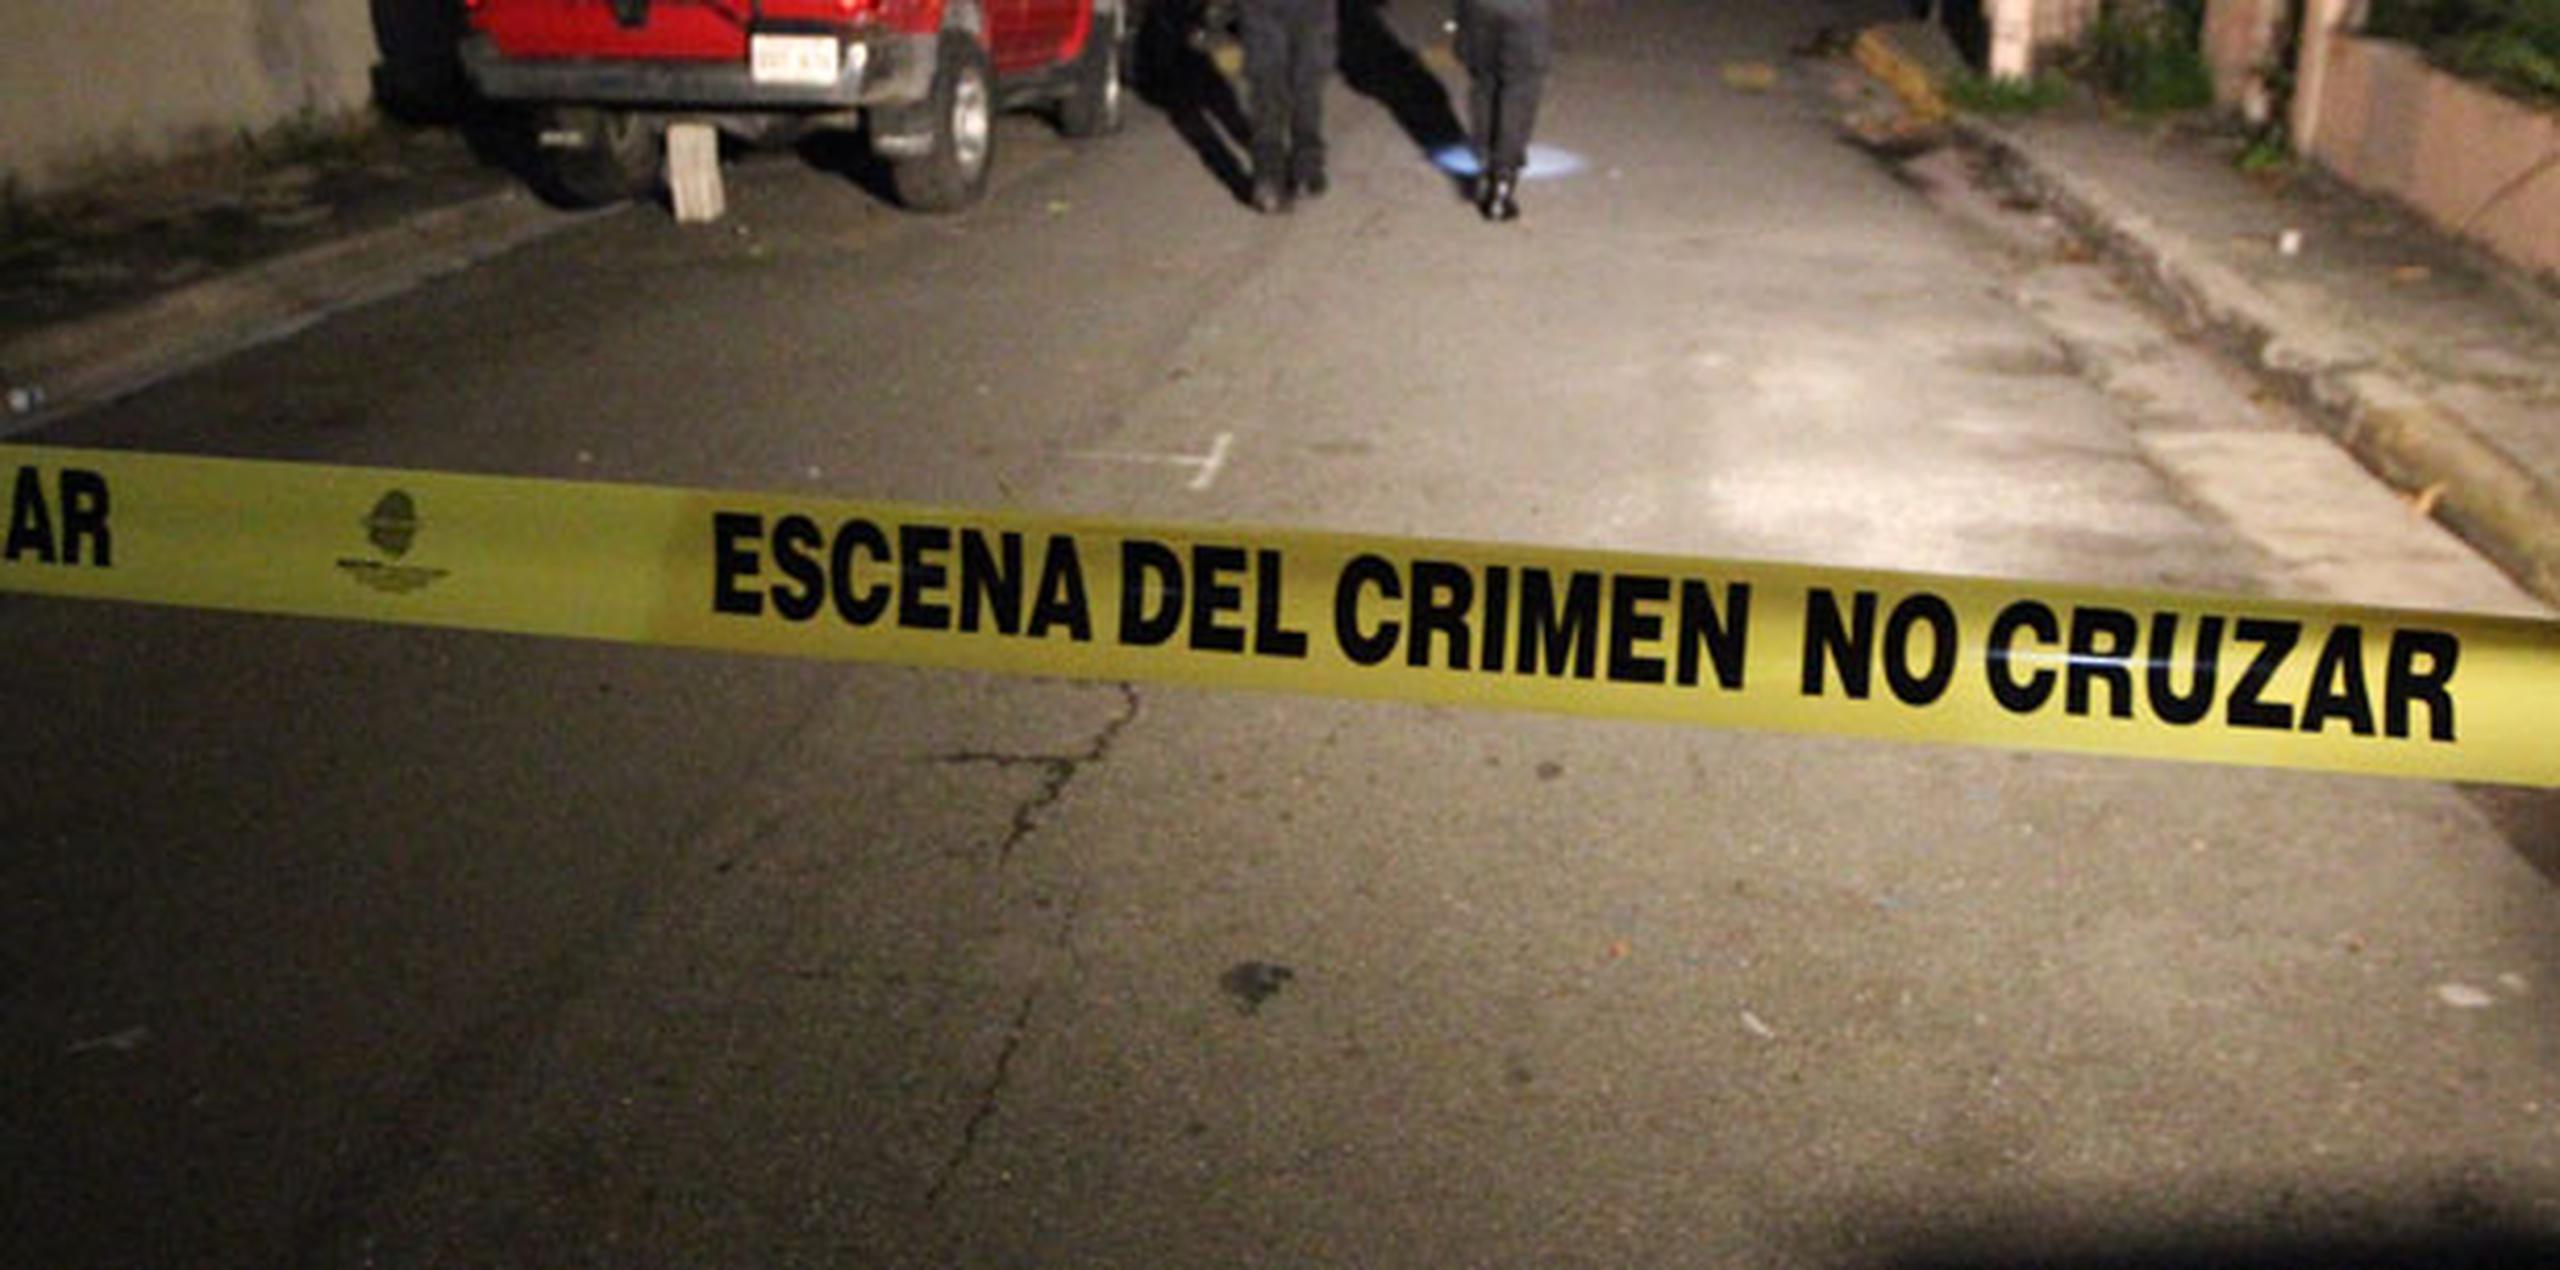 El agente Juan C. Pérez Hernández, de la División de Homicidios, en unión al fiscal Pier Montaperto, se hicieron cargo de la investigación. (Archivo)